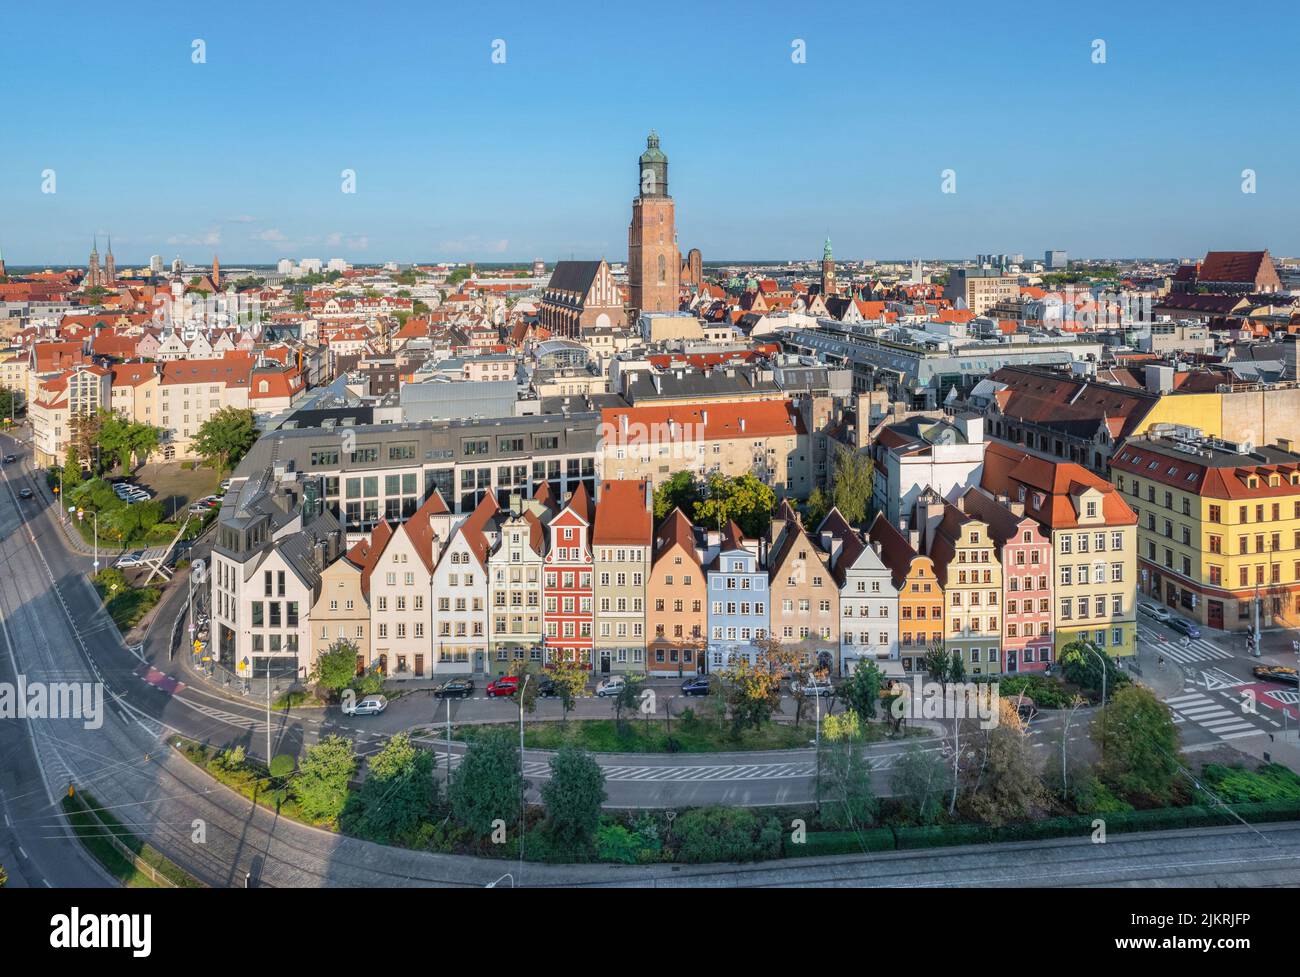 Wroclaw, Polonia. Vista aérea del barrio de casas antiguas bien conservadas en el centro histórico de la ciudad Foto de stock